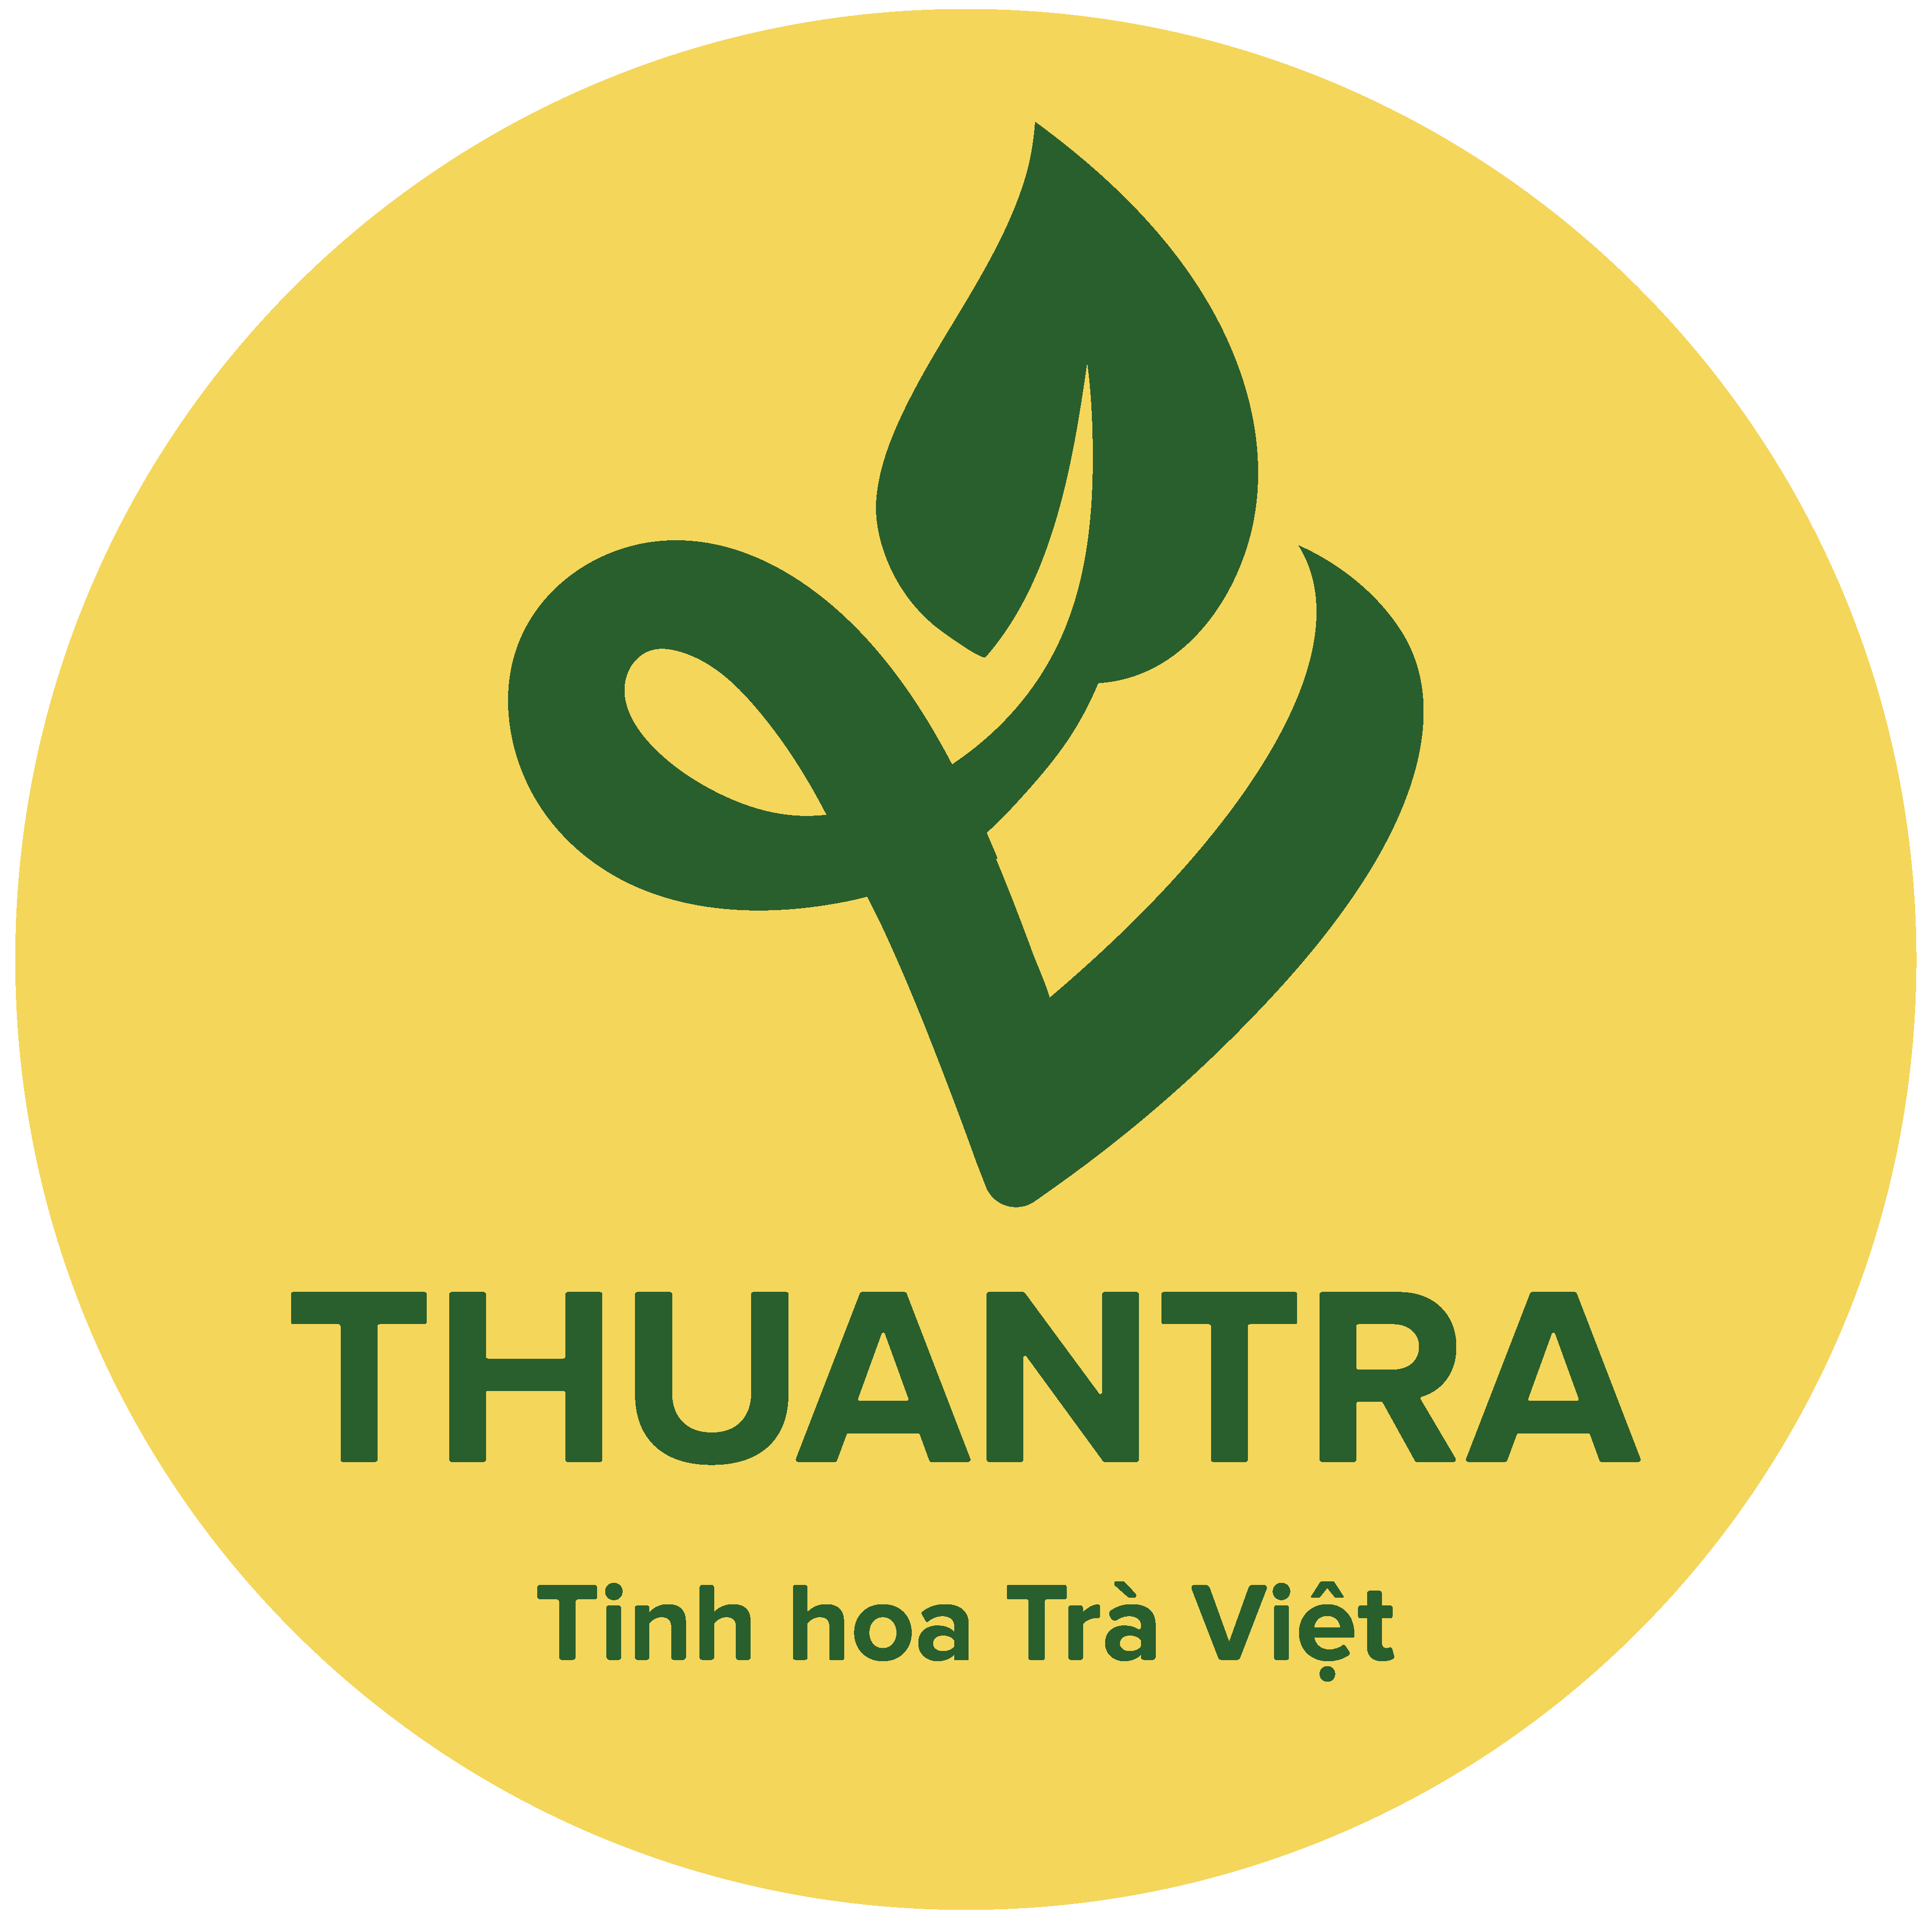 Tinh hoa Trà Việt